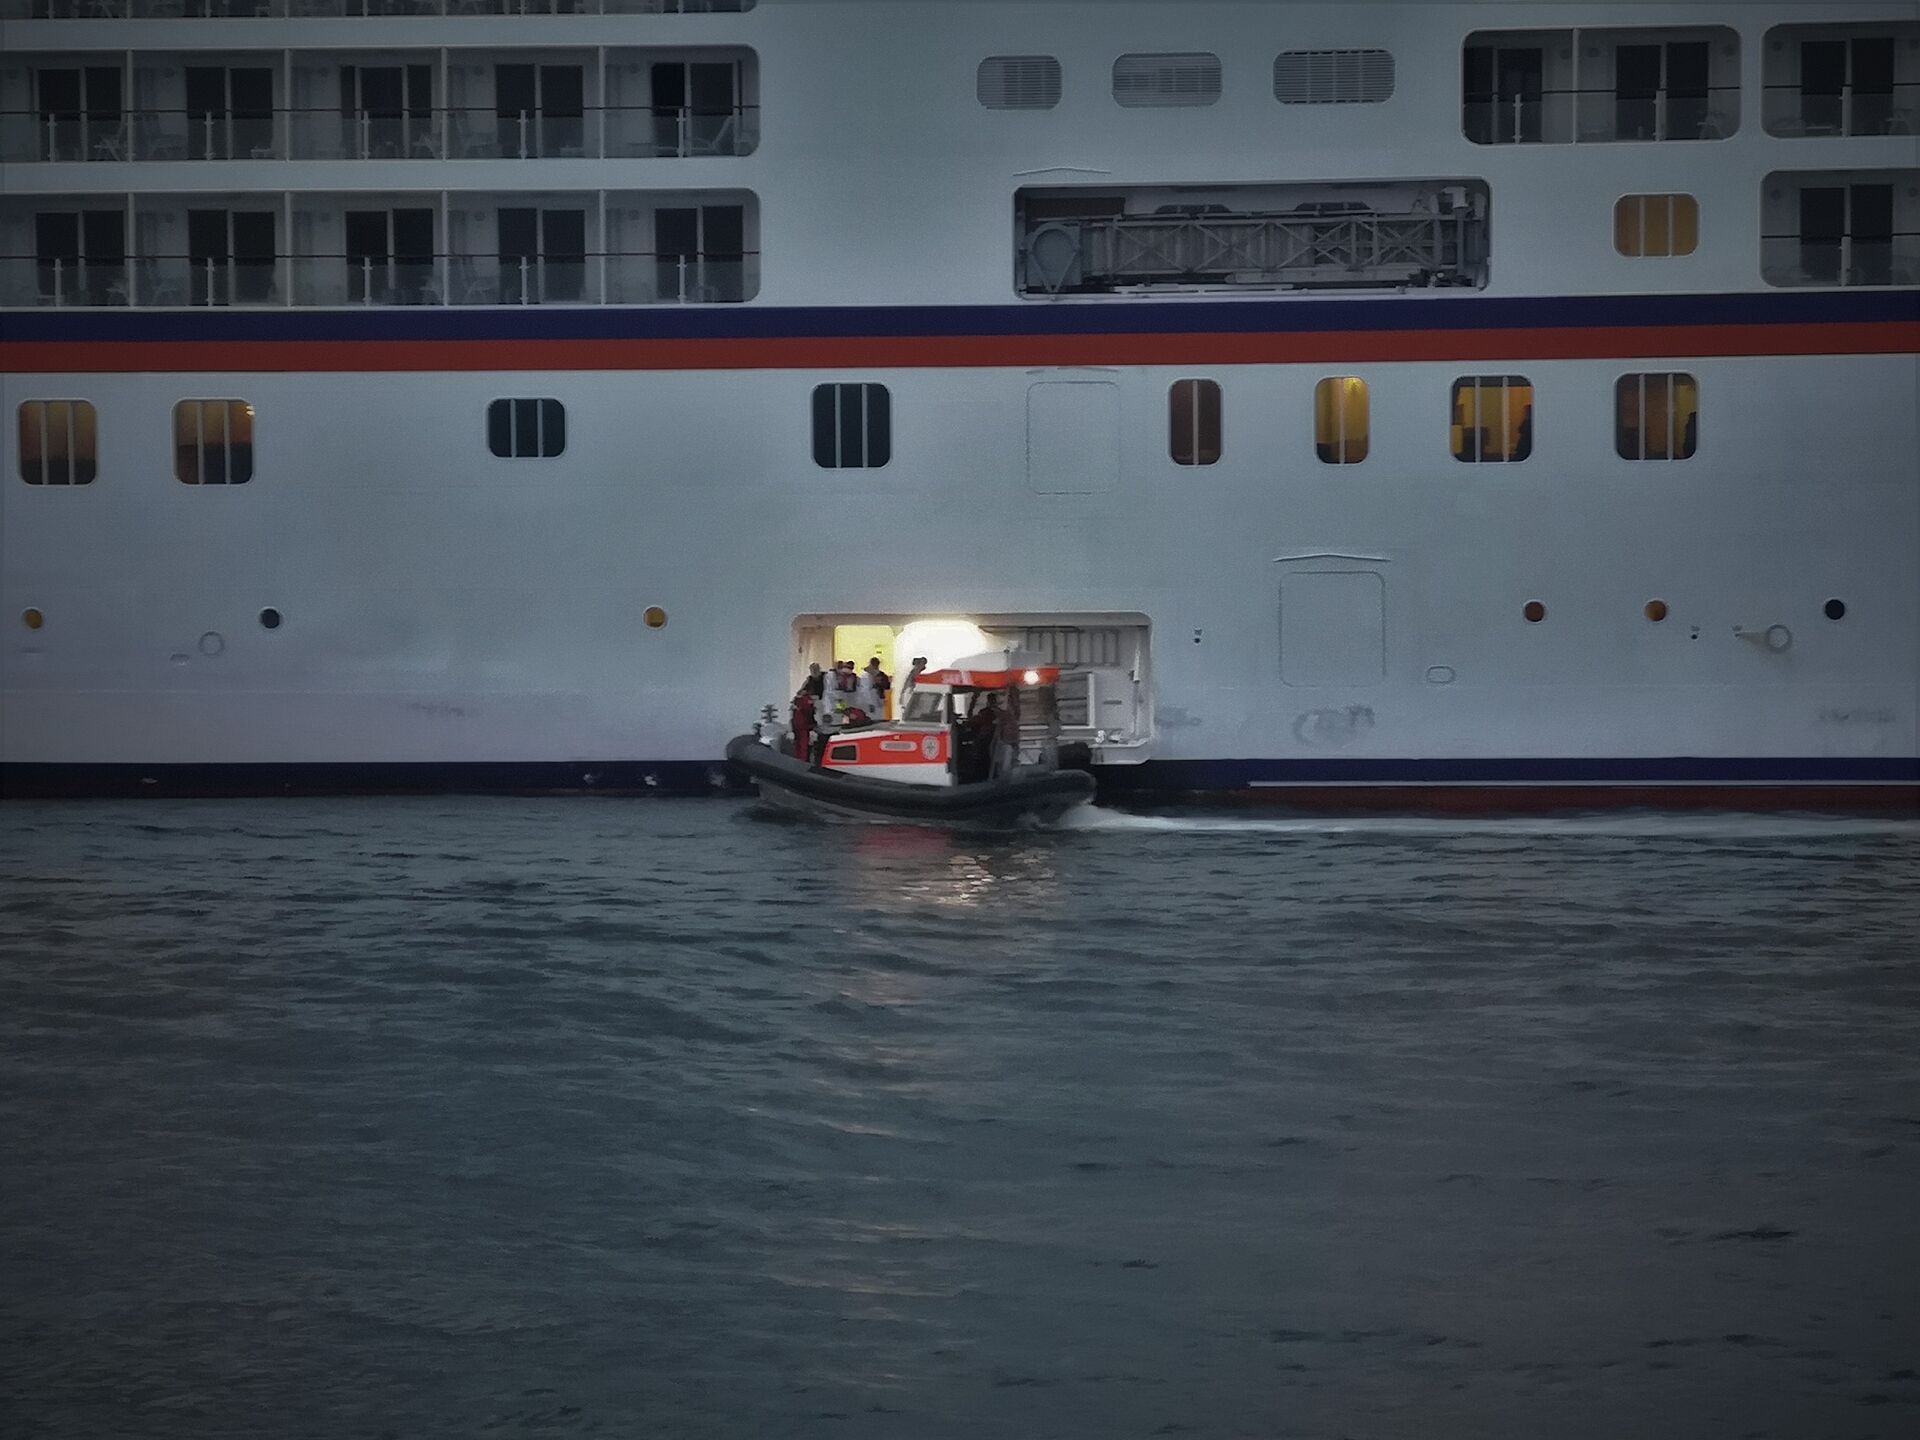 Die Seenotretter transportieren Passagier nach medizinischen Notfall an Land